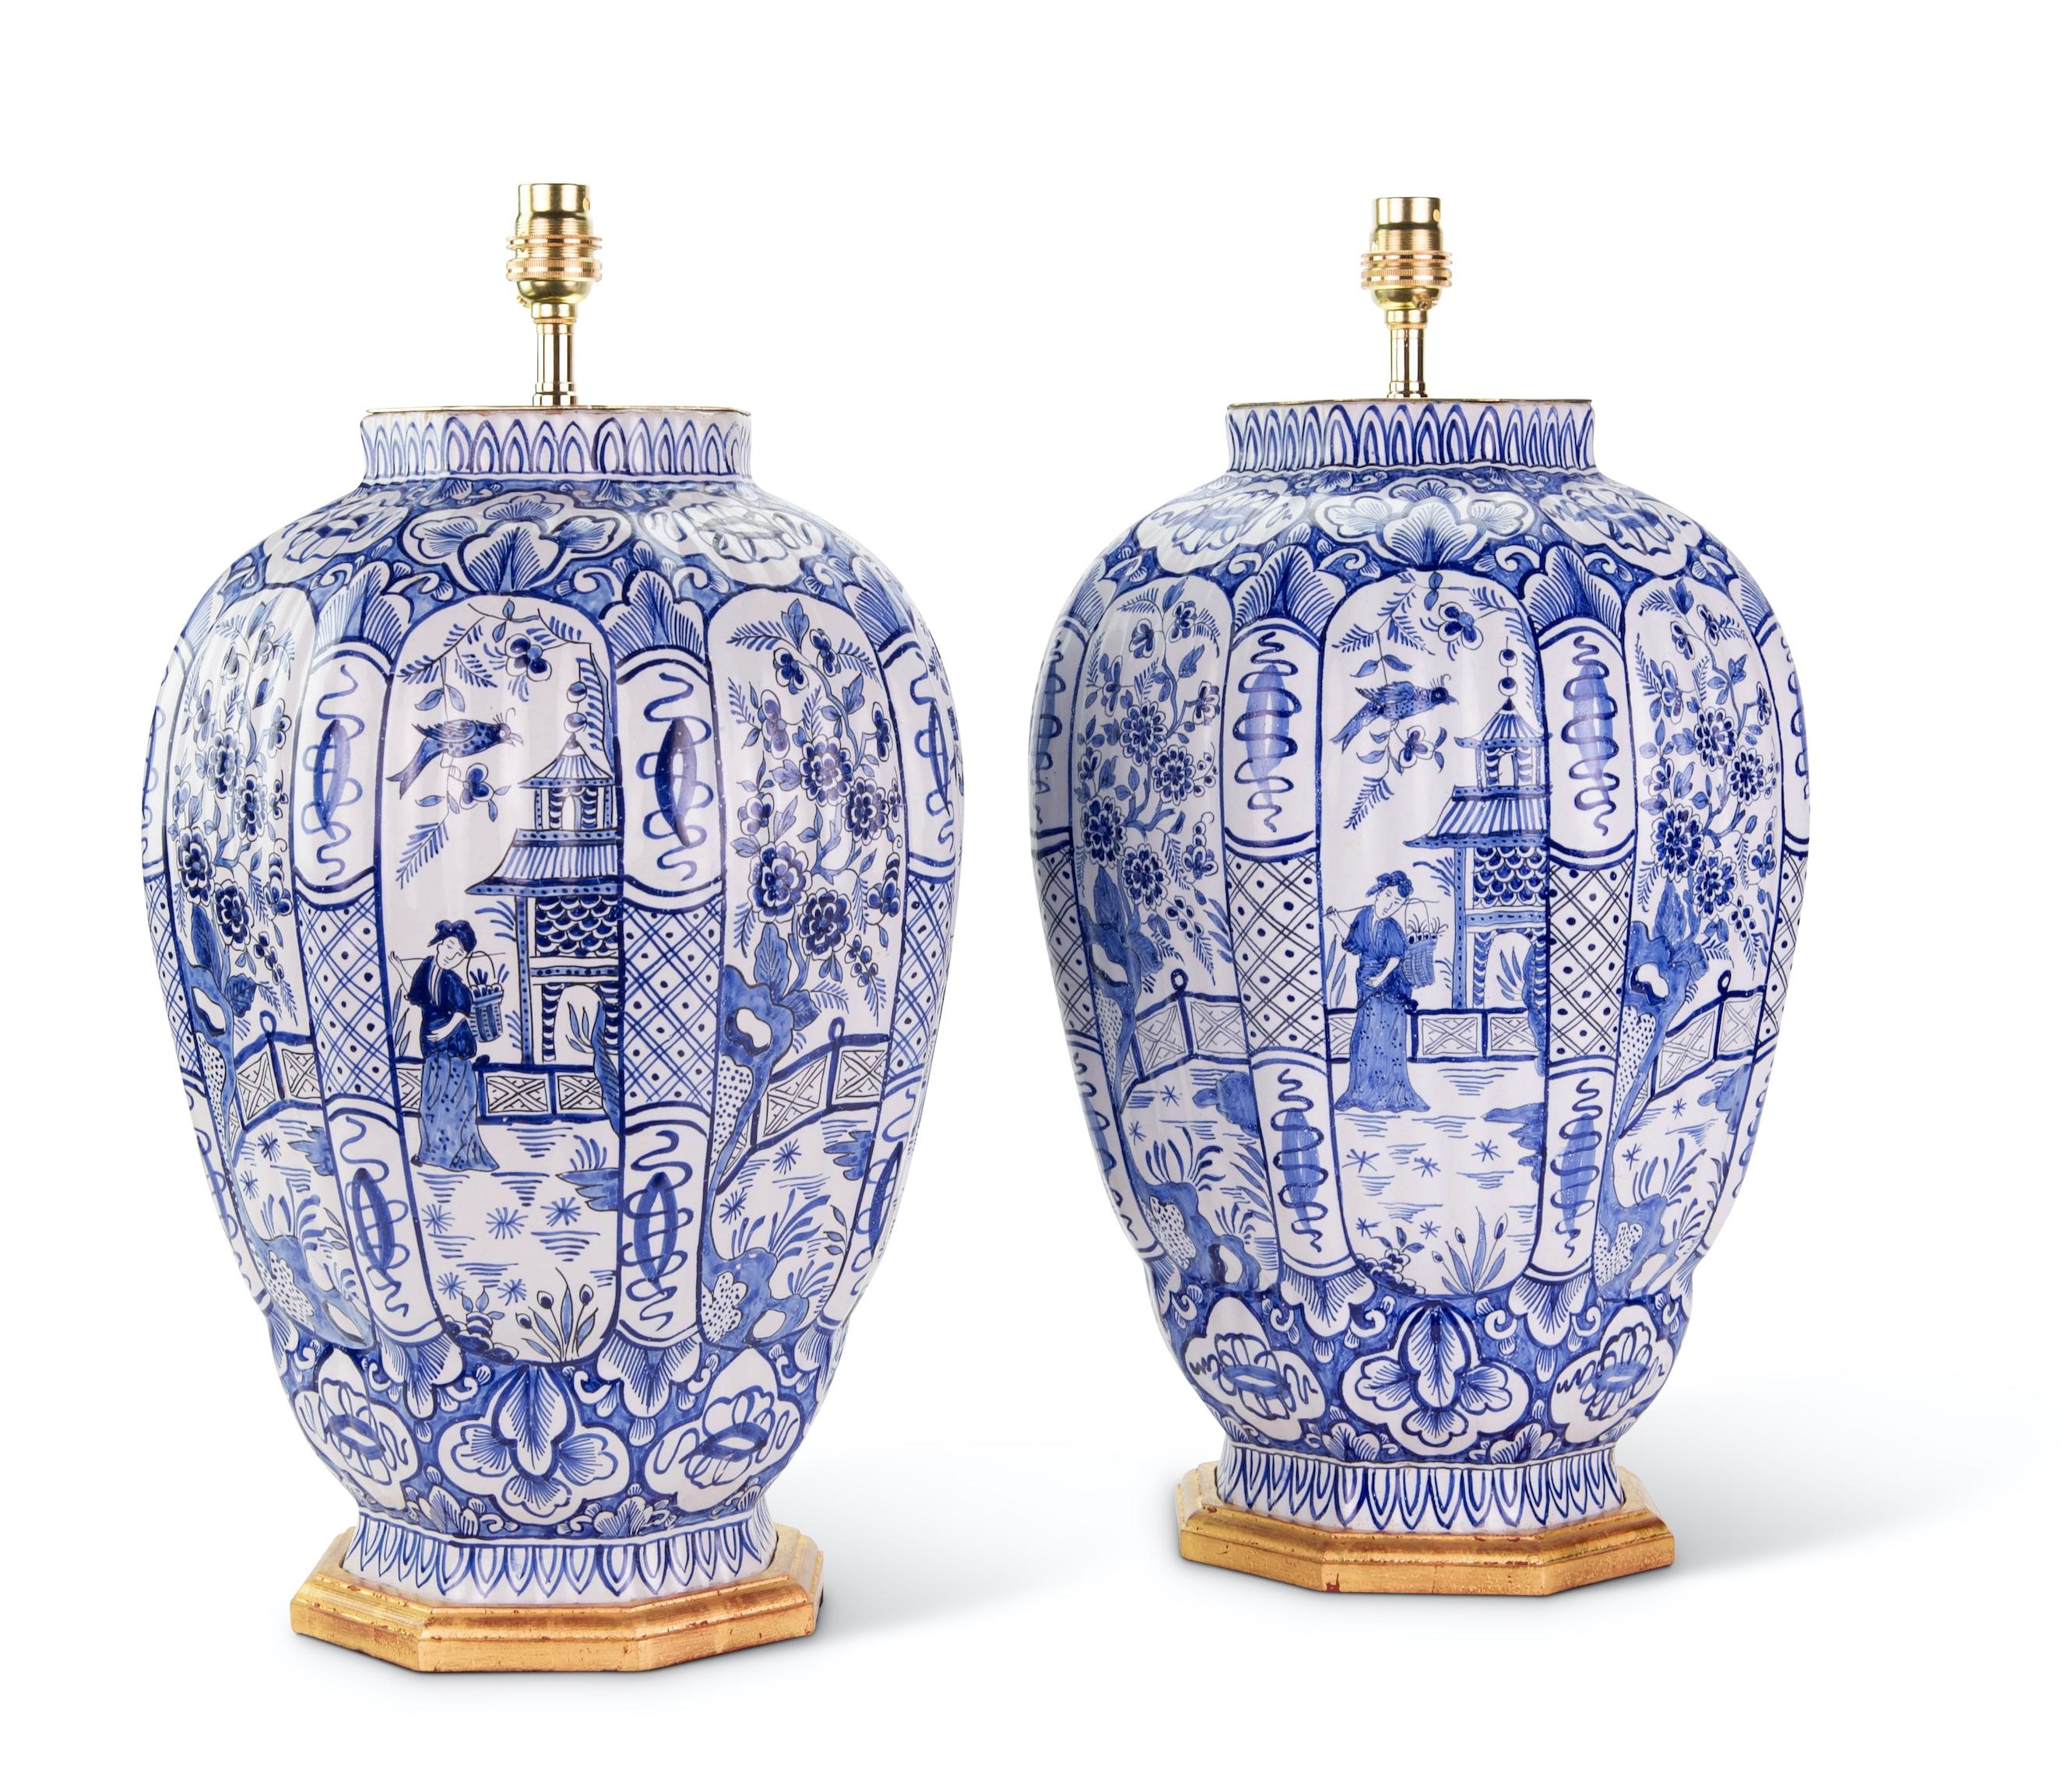 Ein feines Paar großer holländischer blau-weißer Delft-Vasen mit achteckigem, gadroniertem Korpus, dekoriert in Blautönen auf weißem Grund, mit Tafeln mit höfischen Figuren in Gartenszenen mit Pavillons und Vögeln, mit weiteren stilisierten